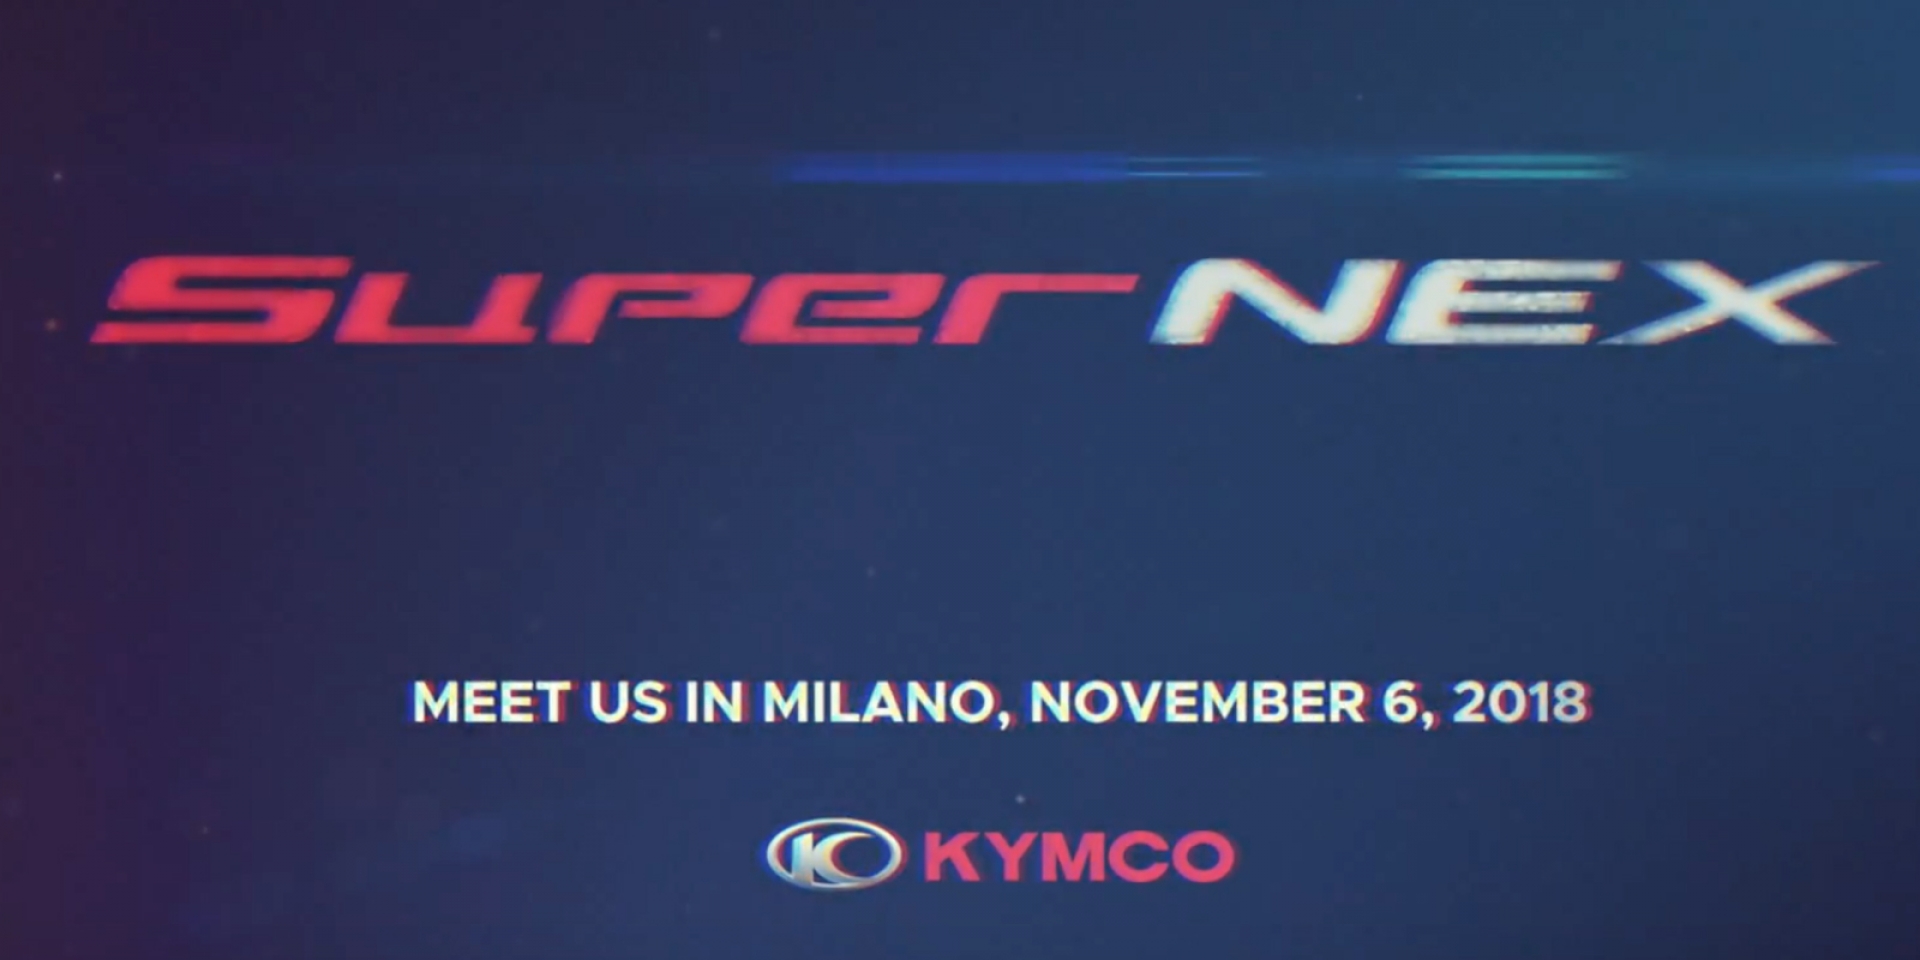 官方新聞稿。SuperNEX 震撼咆嘯 KYMCO 預告11月6日全球記者會將轟動全球